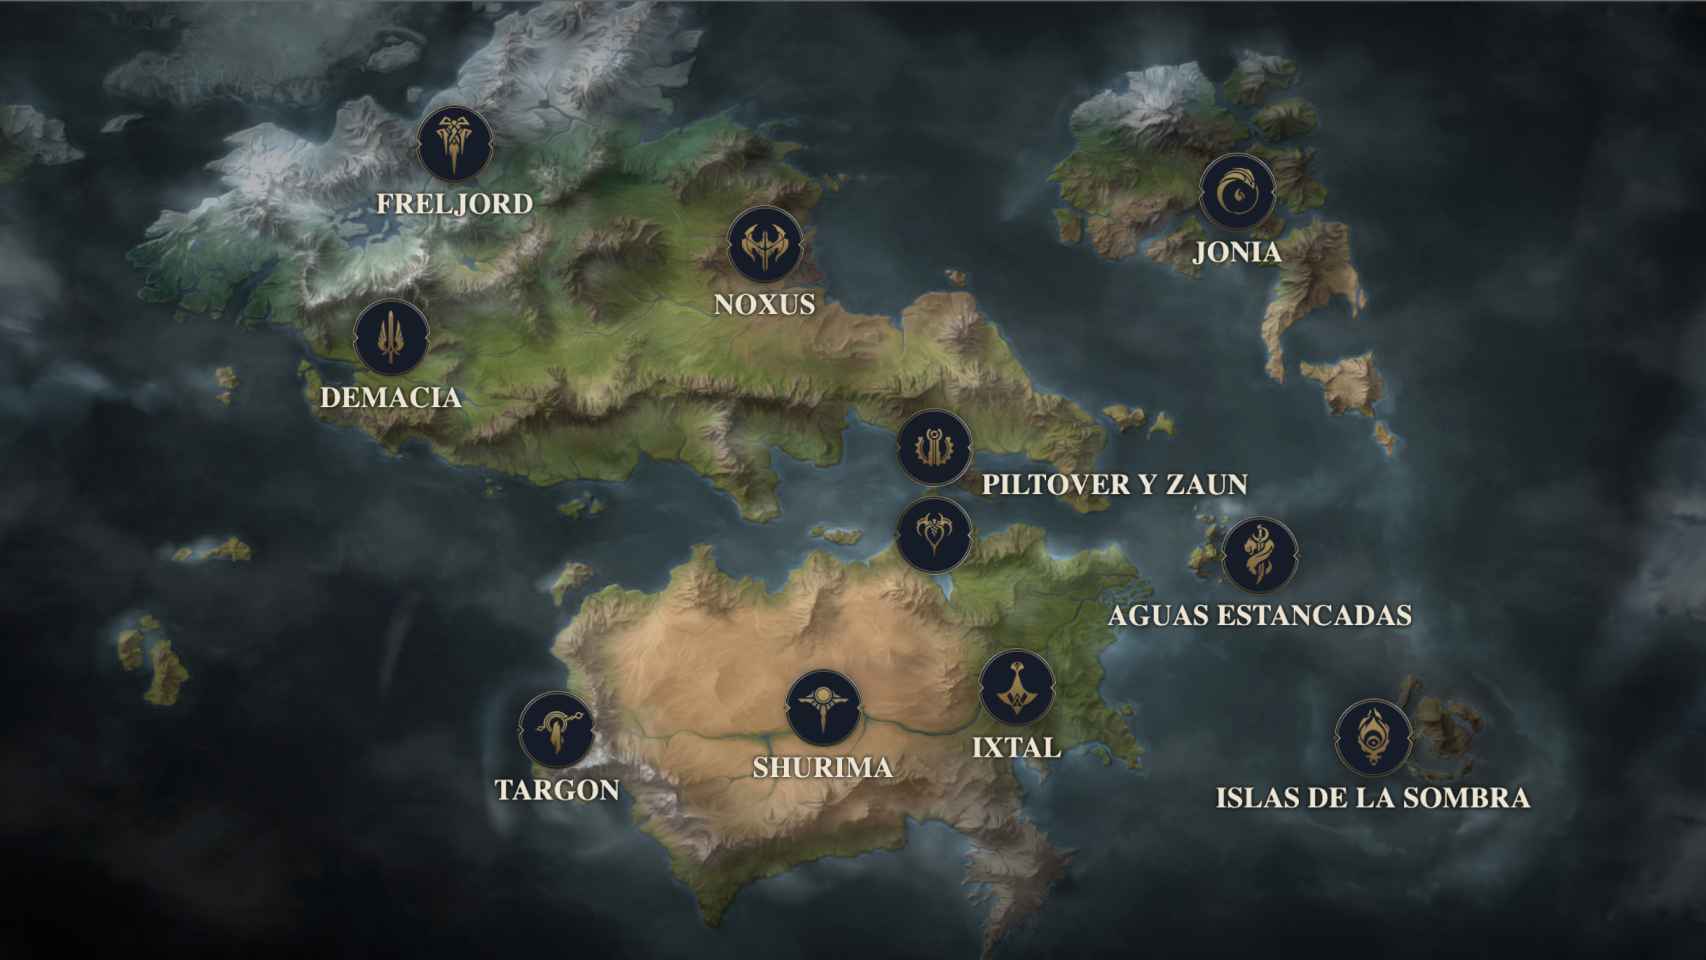 Mapa interactivo del juego online, disponible en la web oficial de 'League of Legends'.